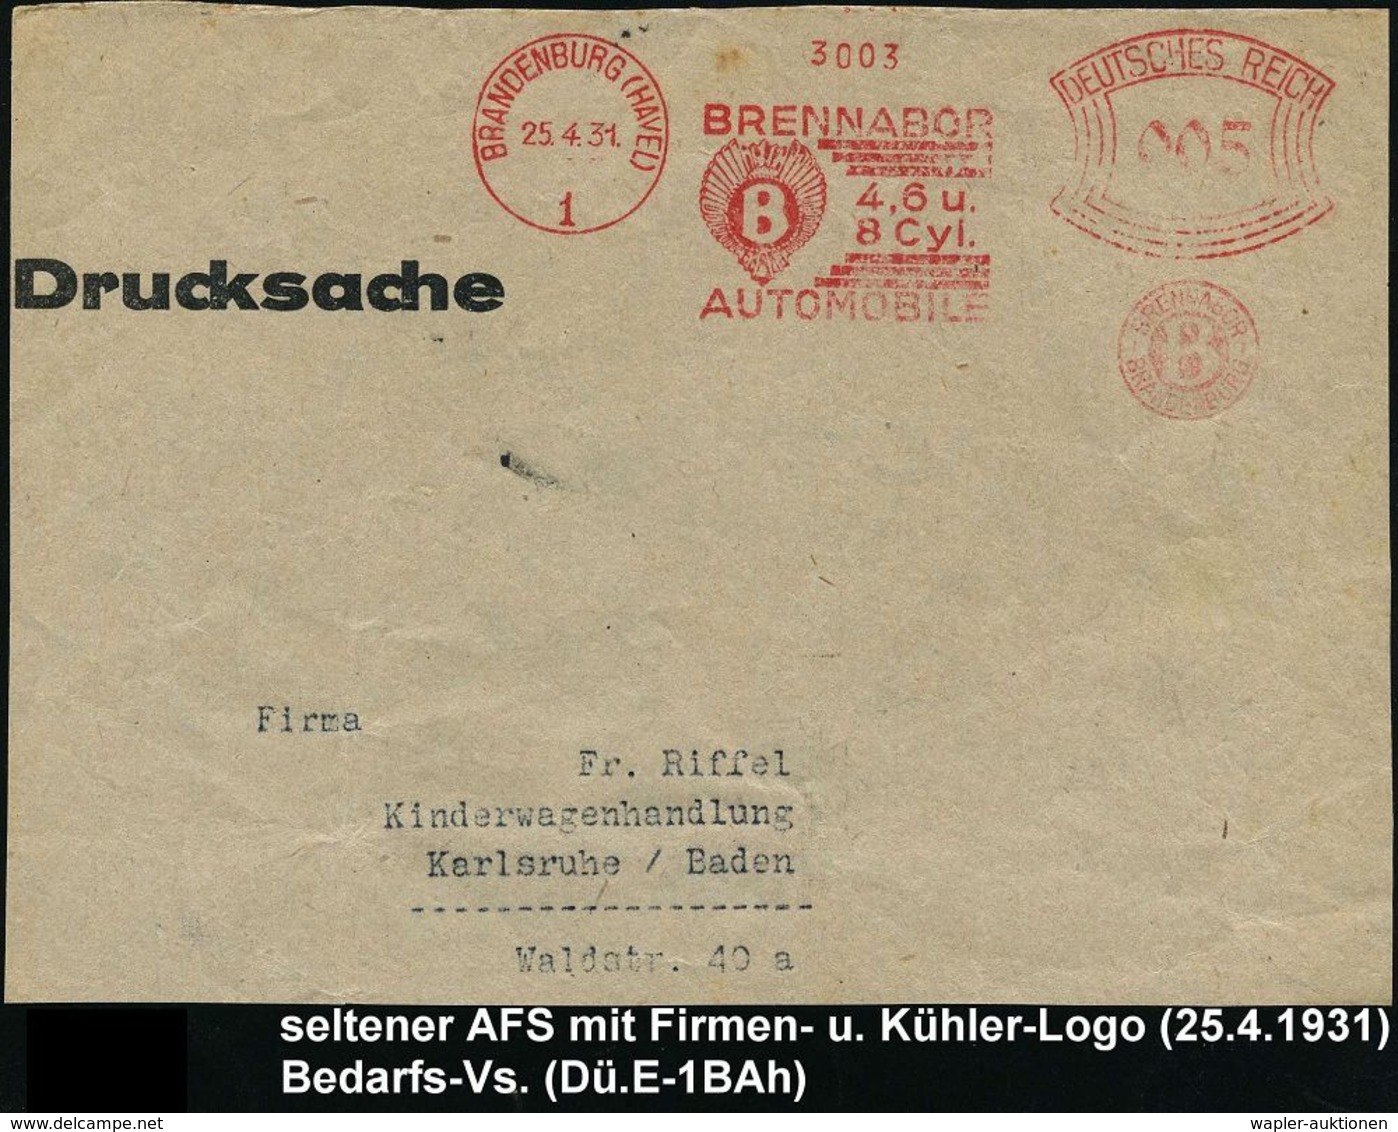 AUTOMOBIL-HERSTELLER DEUTSCHLAND : BRANDENBURG (HAVEL)/ 1/ BRENNABOR/ 4,6 U./ 8 Cyl./ AUTOMOBILE.. 1931 (25.4.) Seltener - Autos